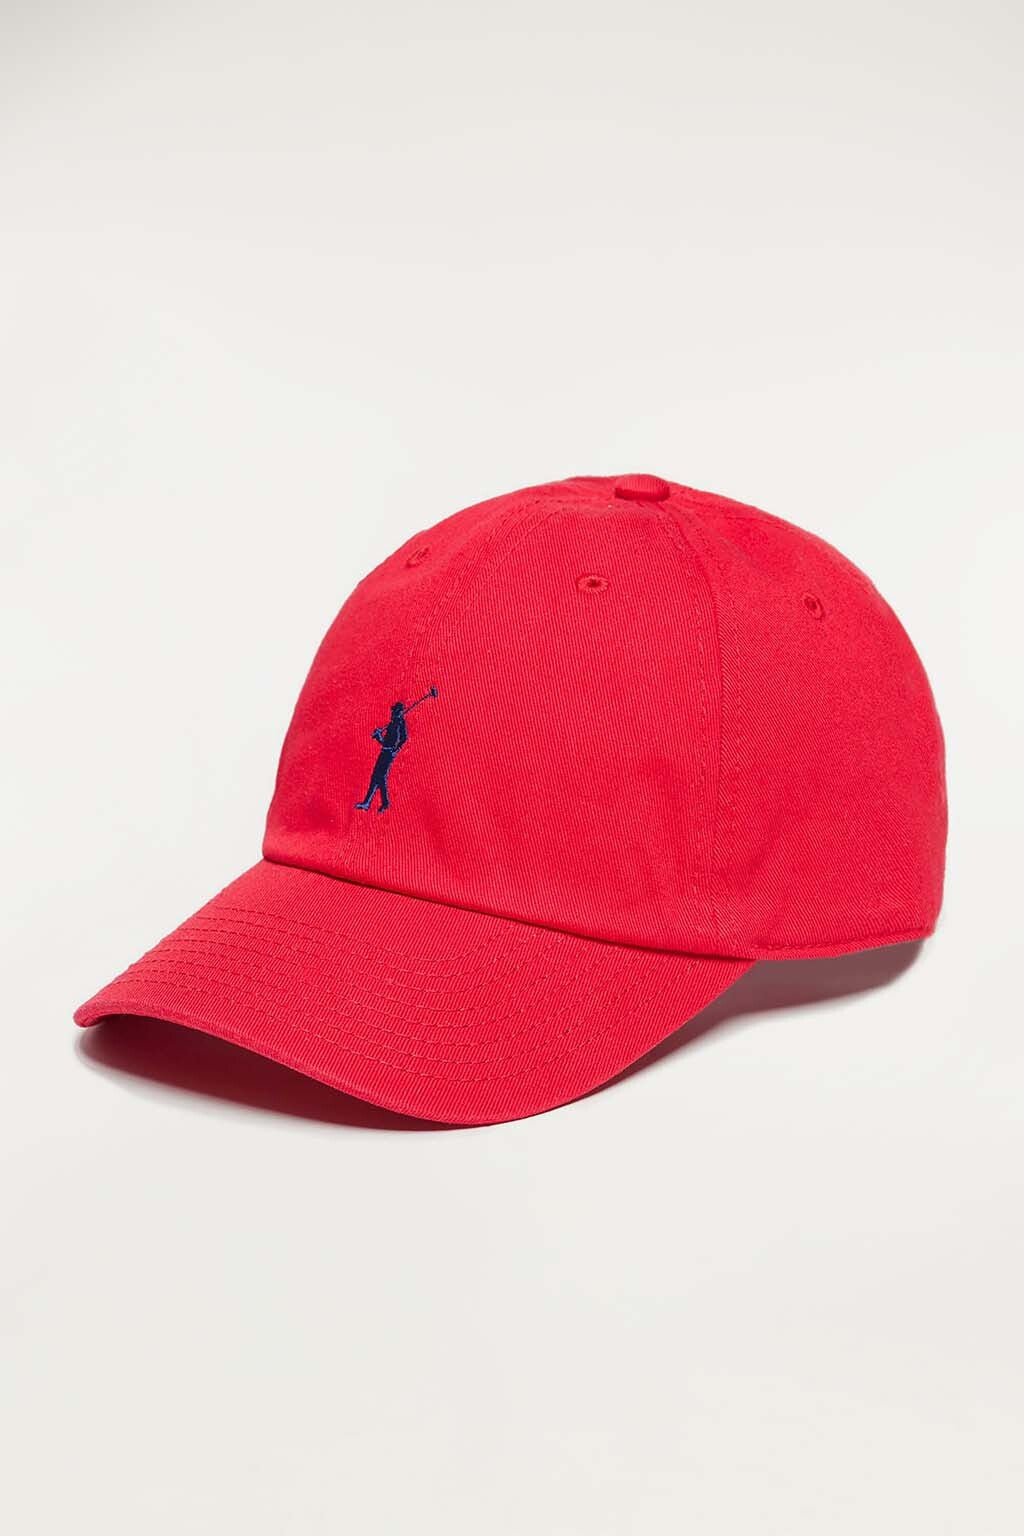 Gorra roja con logo bordado color Polo